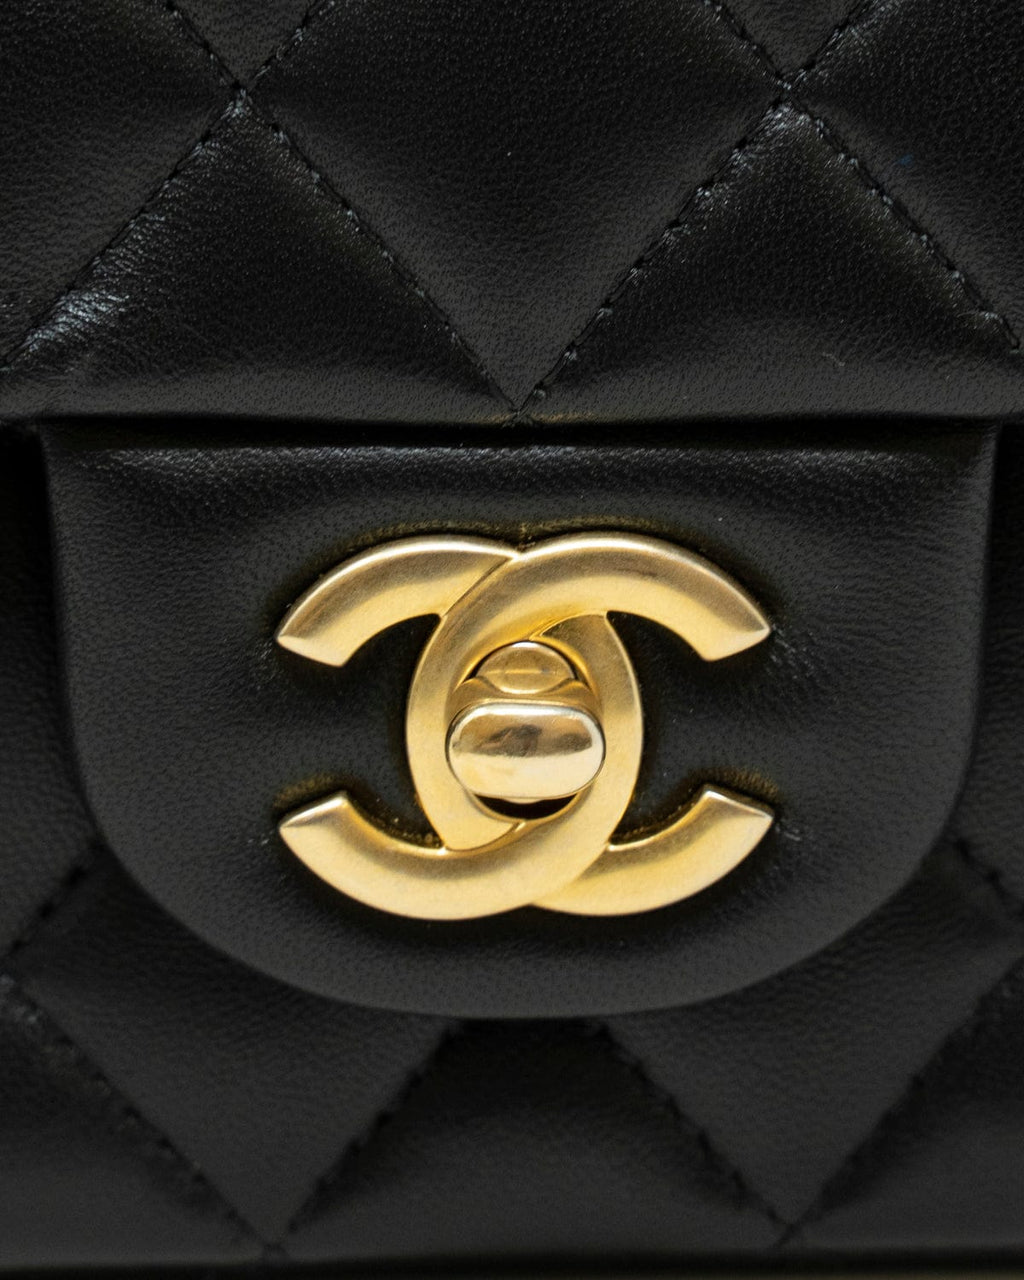 Chanel gold flap bag - Gem